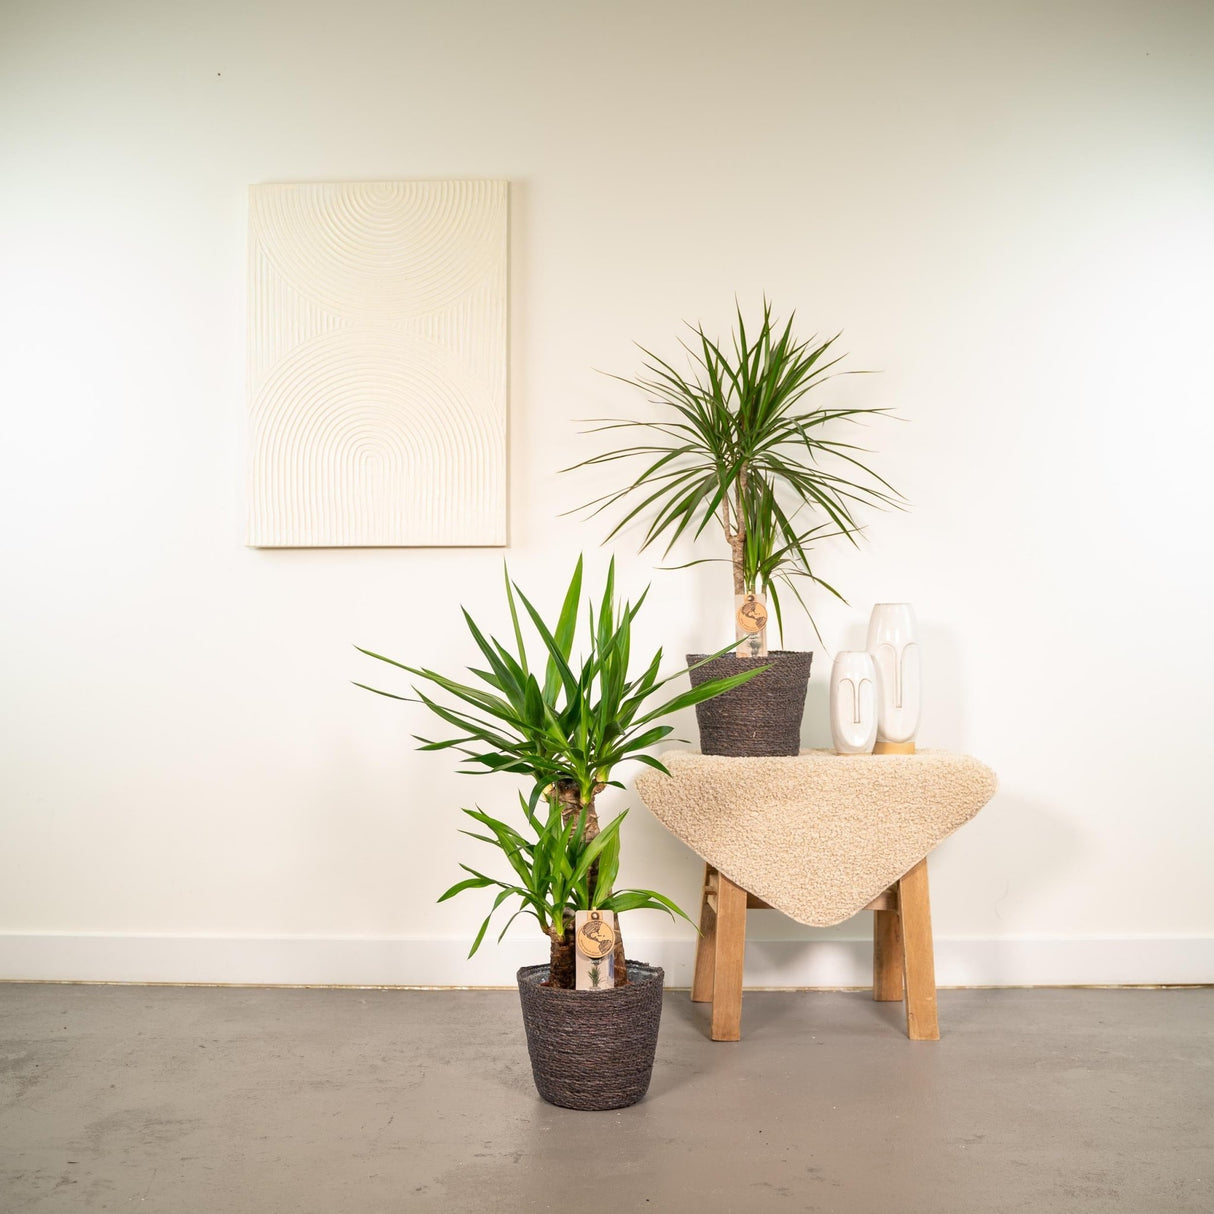 Livraison plante - Yucca, Dracaena, duo de plantes - plantes d'intérieur